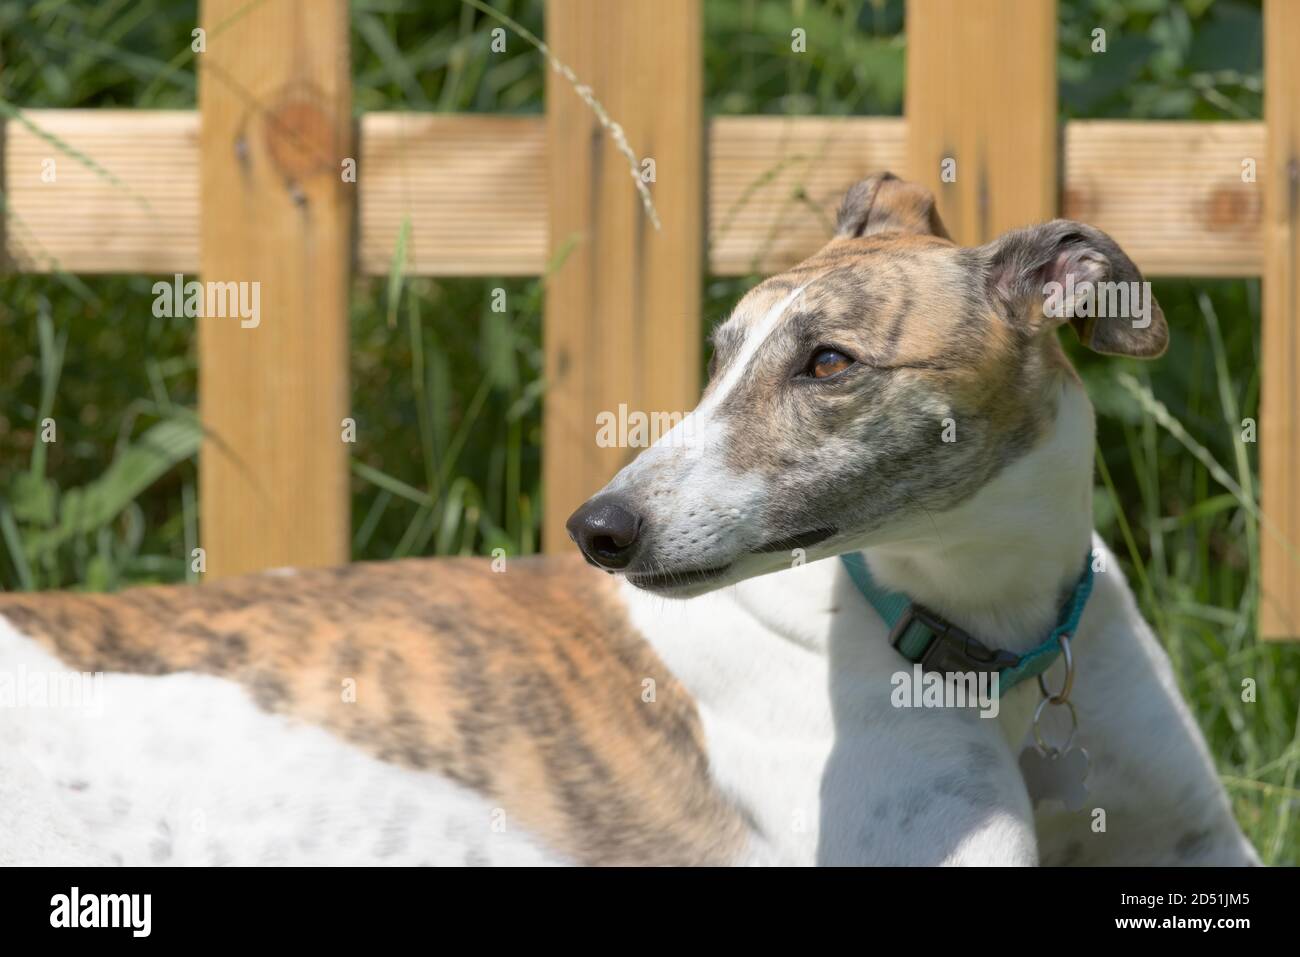 Nouvelle clôture en bois et herbe longue derrière un chien de lévrier sain qui regarde à gauche. La lumière du soleil chaude et vive attire l'œil du chien. Banque D'Images